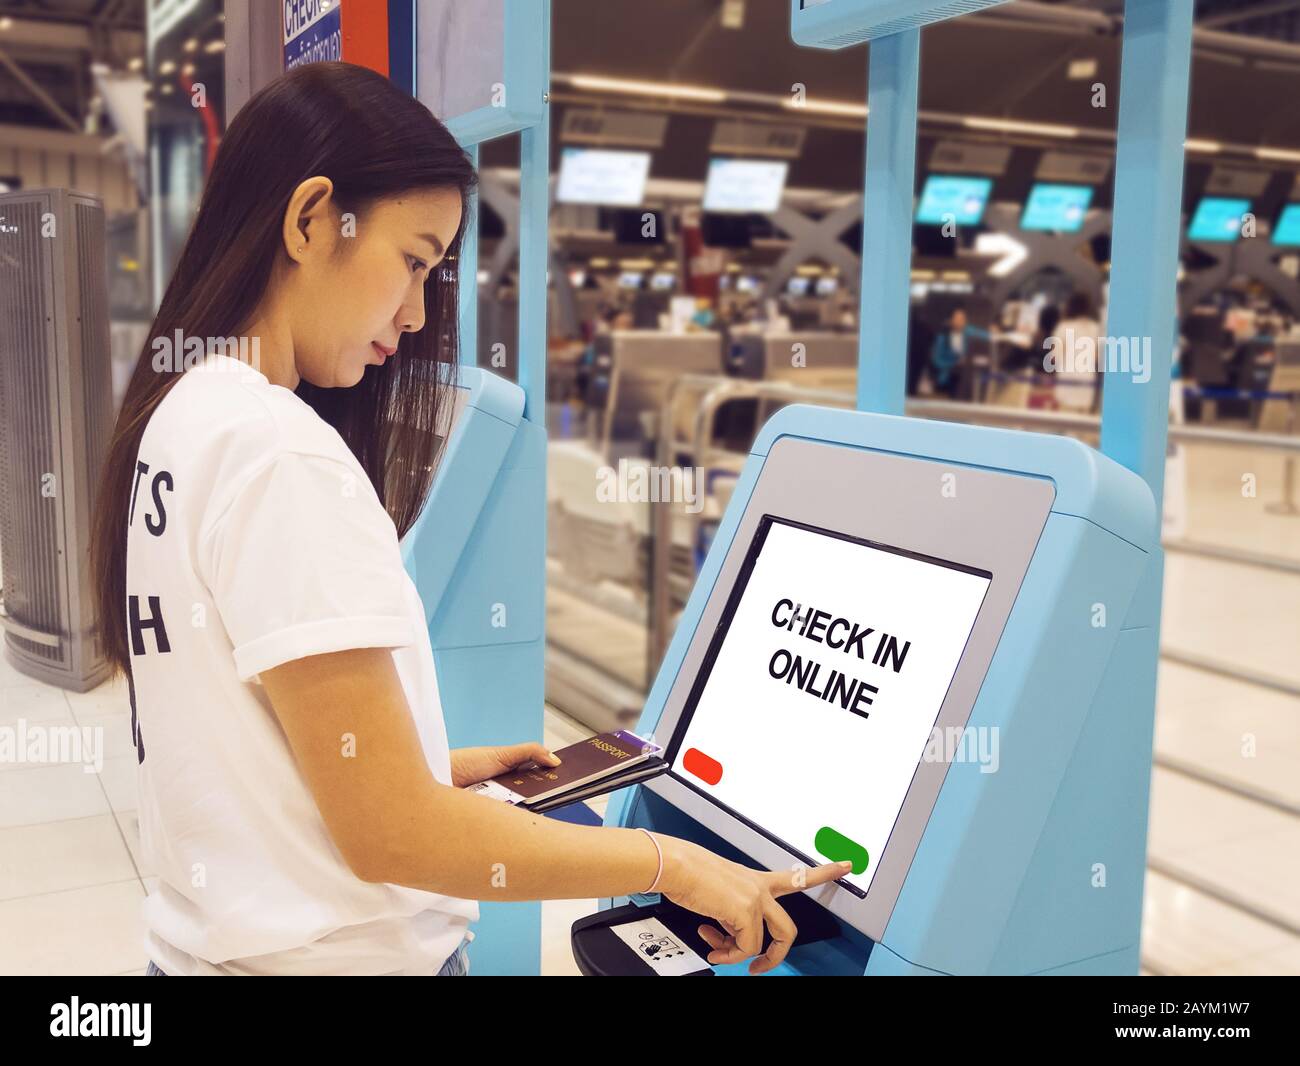 Jeune femme asiatique avec passeport utilisant l'écran interactif à écran tactile du kiosque d'auto-enregistrement à l'aéroport, effectuant l'auto-enregistrement pour le vol ou l'achat d'airpla Banque D'Images